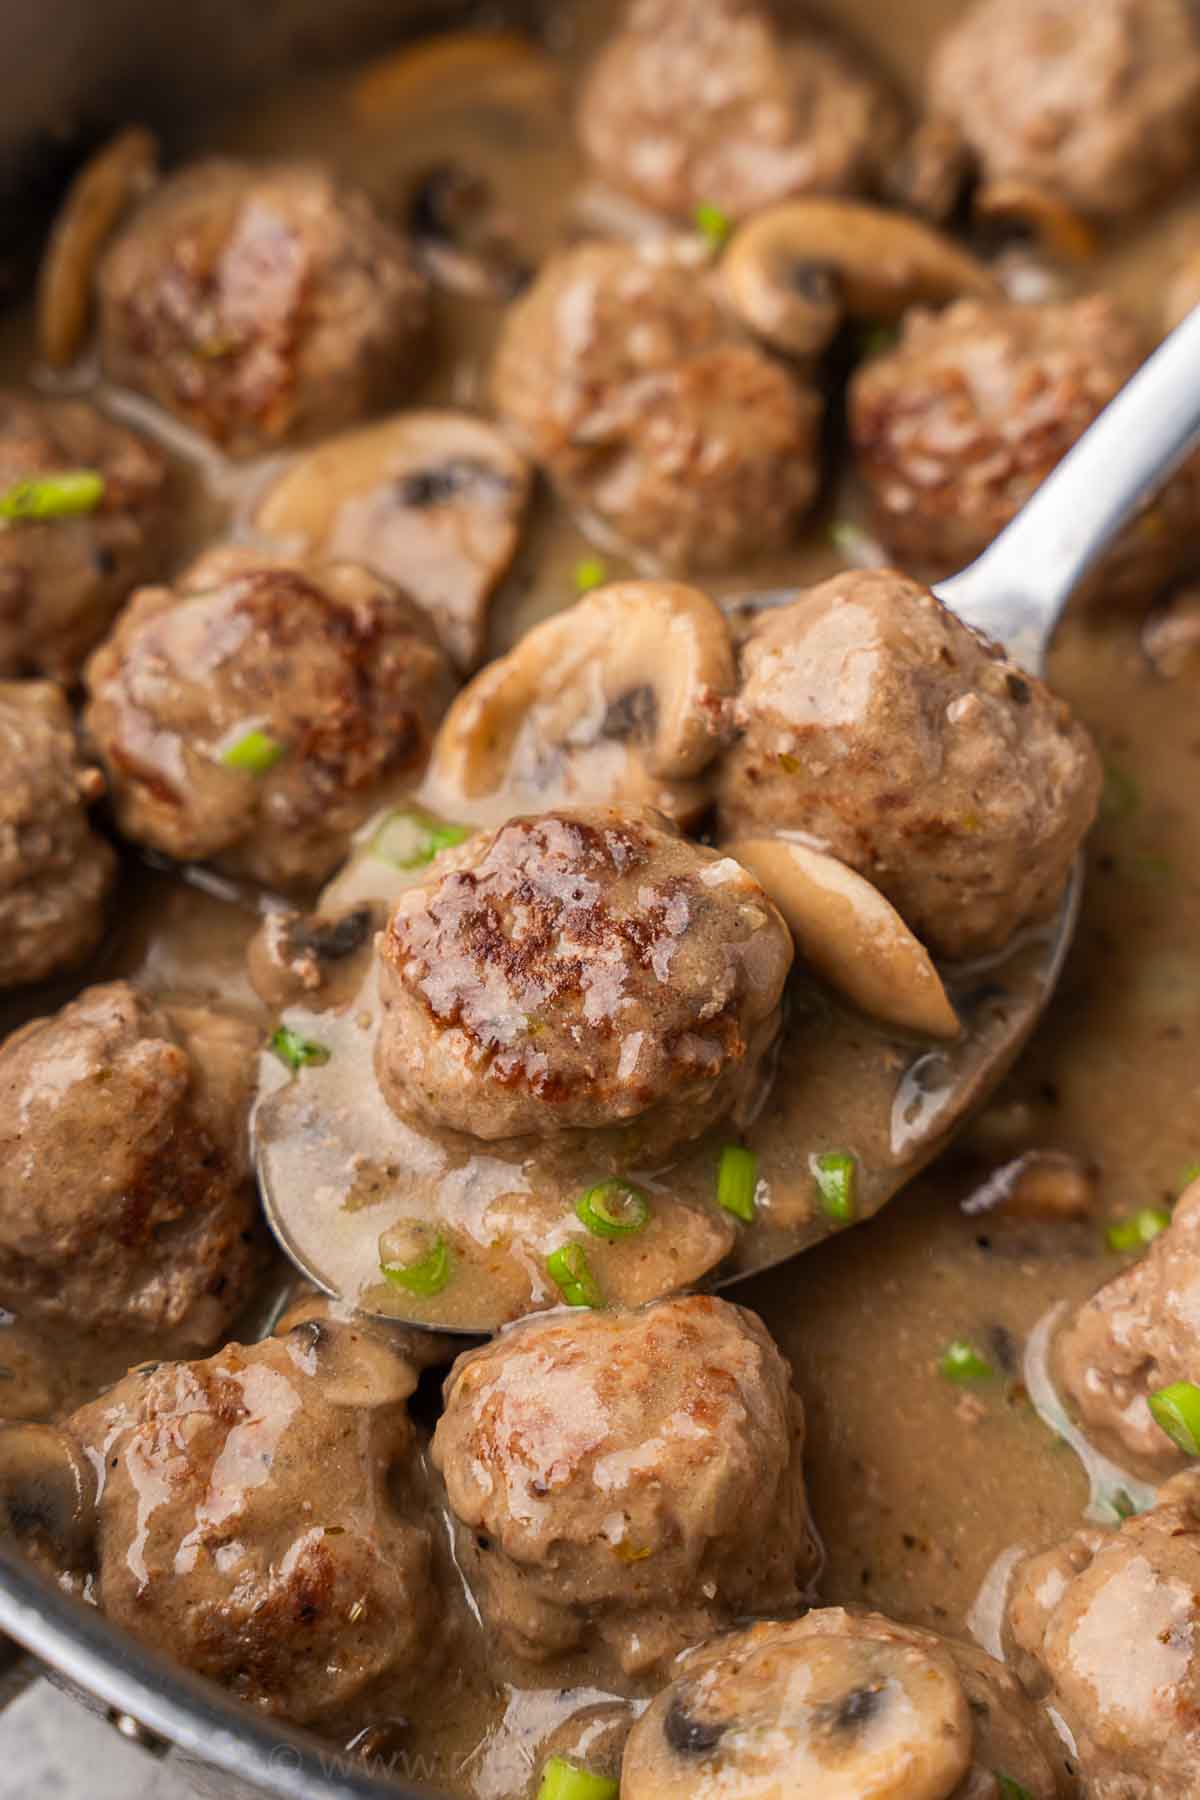 meatballs with mushroom sauce.